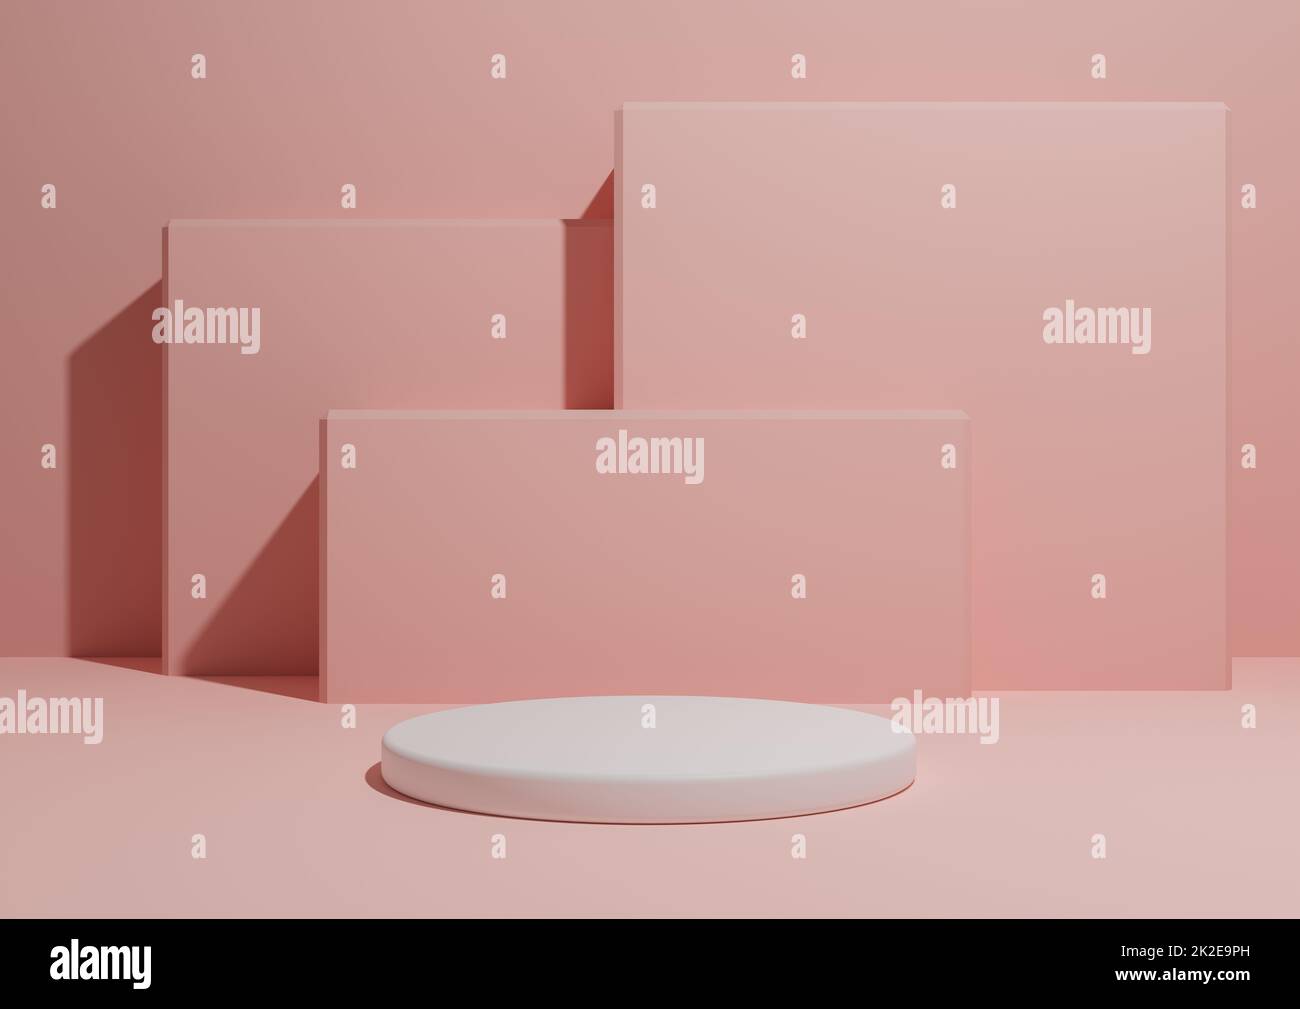 Pastellfarben, Hellrot, Lachs-Rosa, 3D-Darstellung eines einfachen, minimalistischen Hintergrunds mit einem Podium oder Ständer und geometrischen quadratischen Formen im Hintergrund. Stockfoto